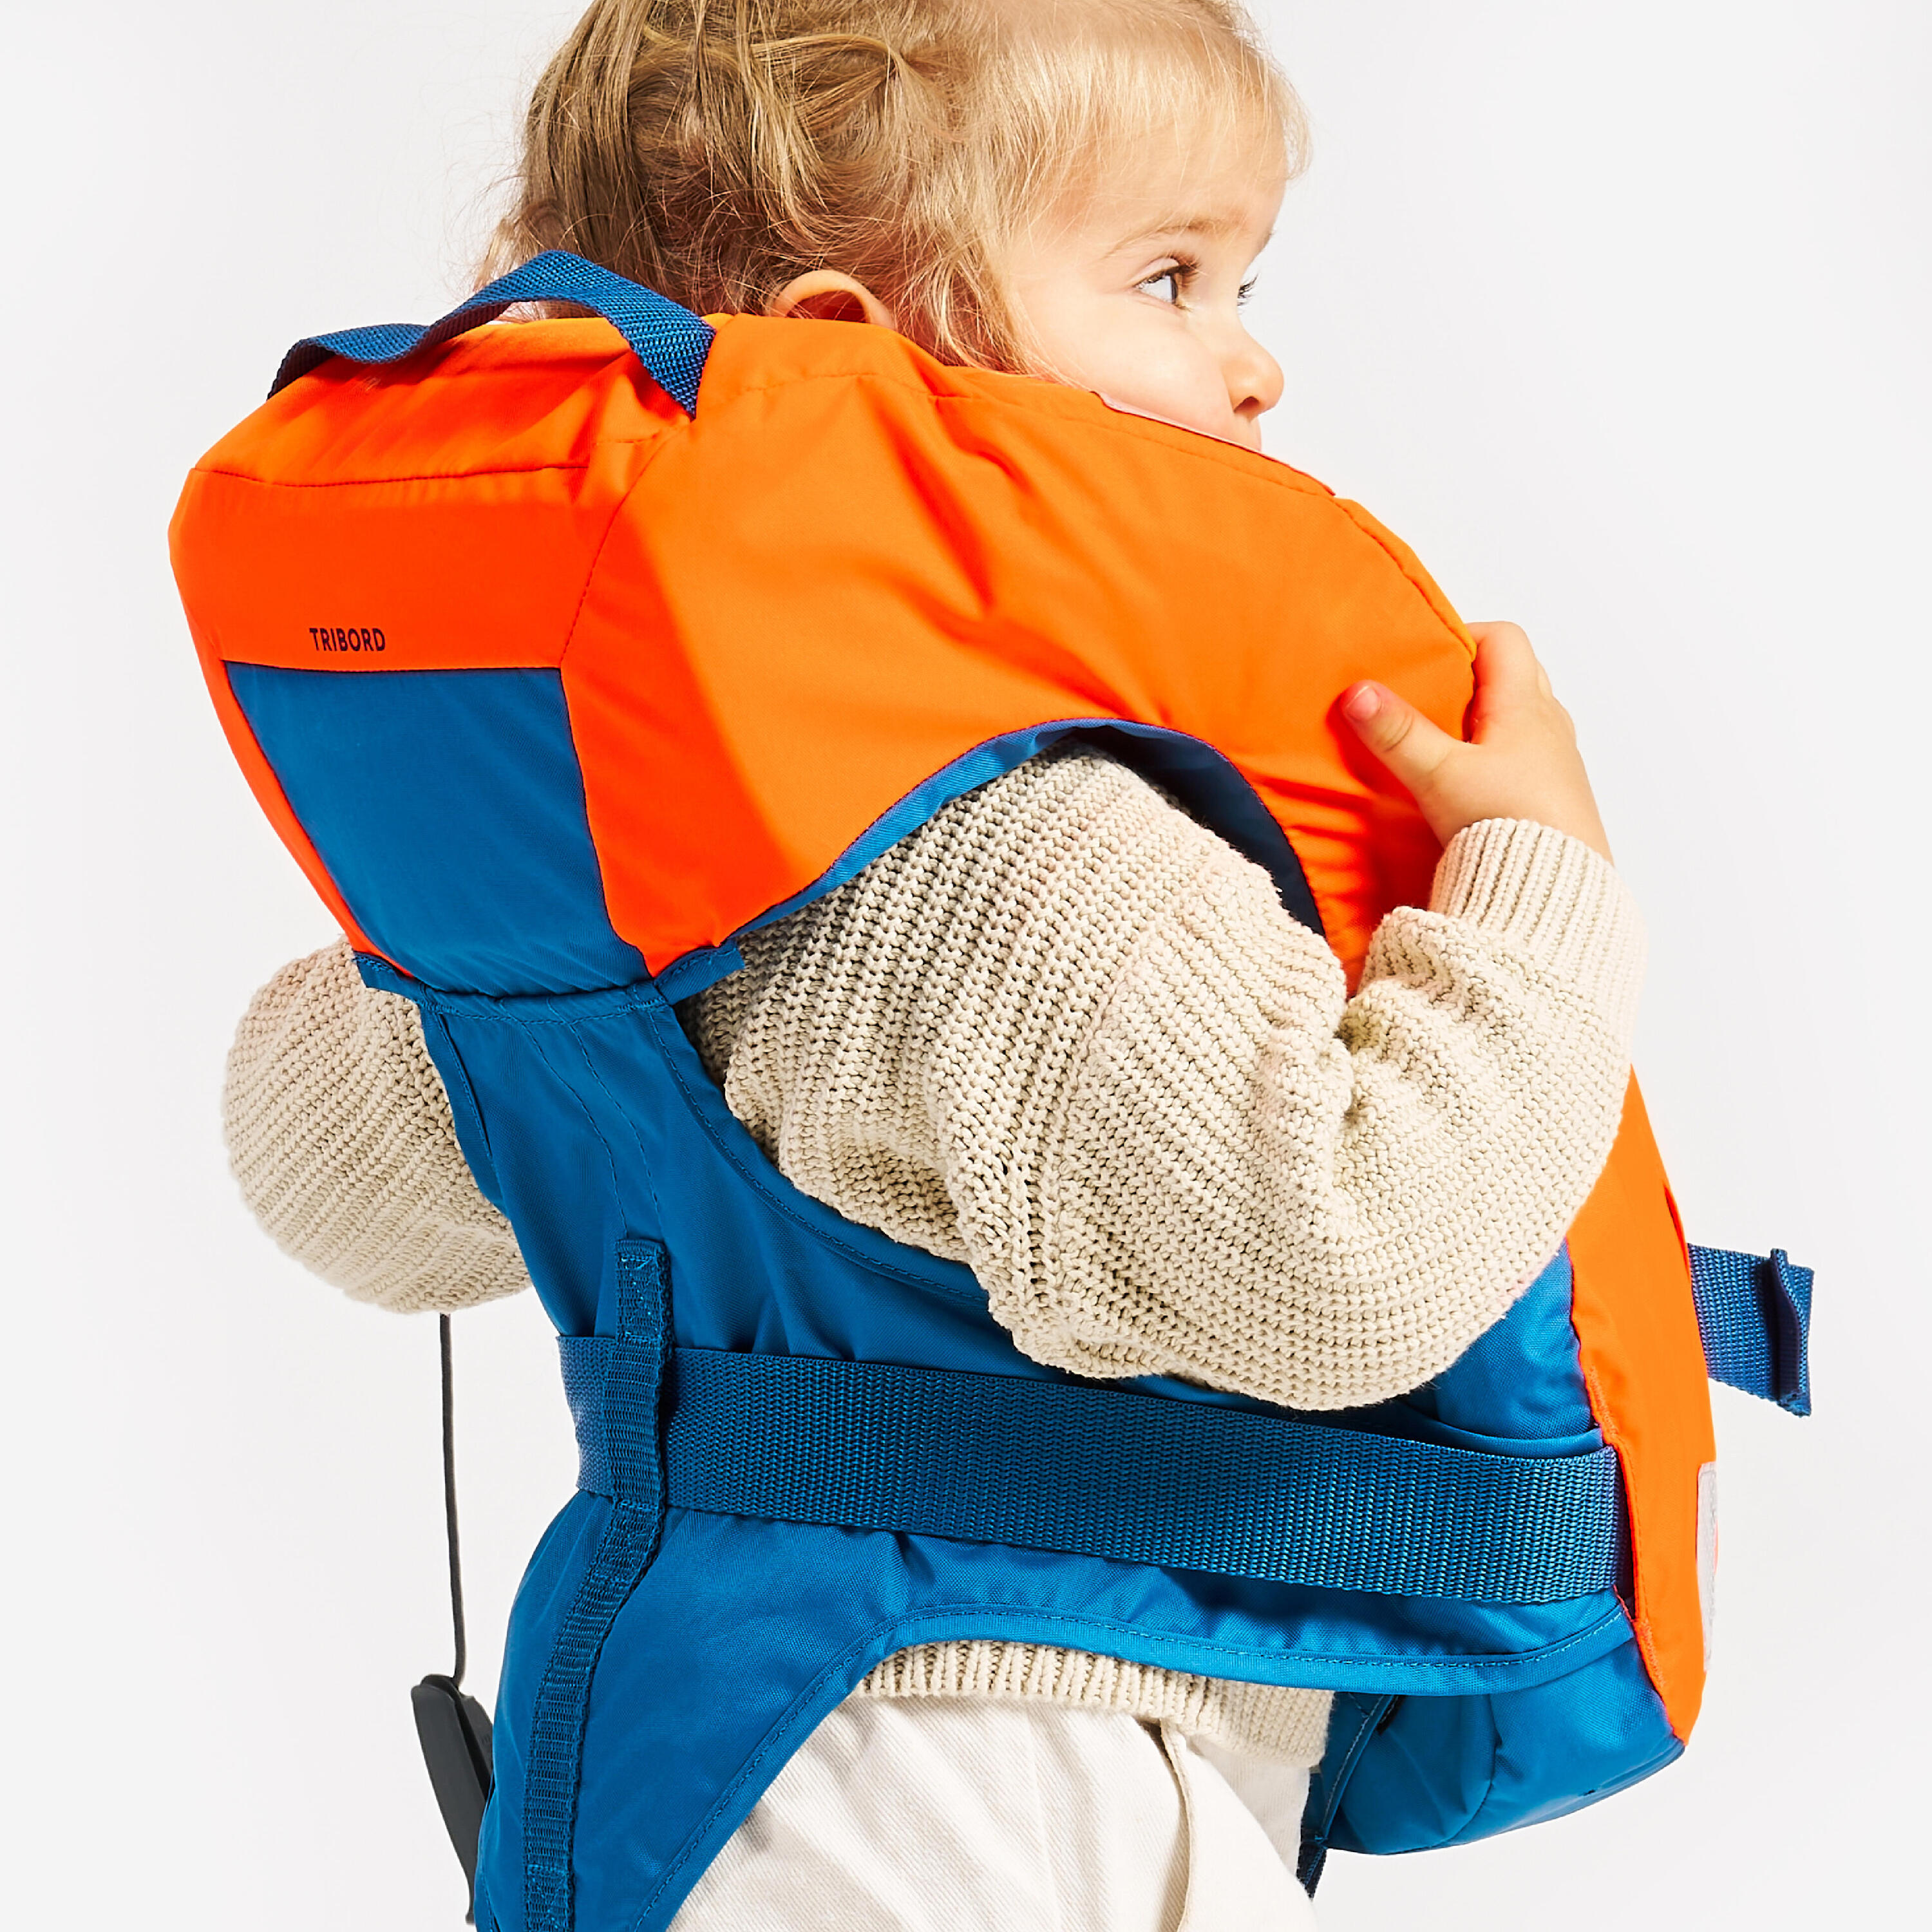 LJ100N easy baby life jacket for babies and infants 10-15 kg orange blue 7/15